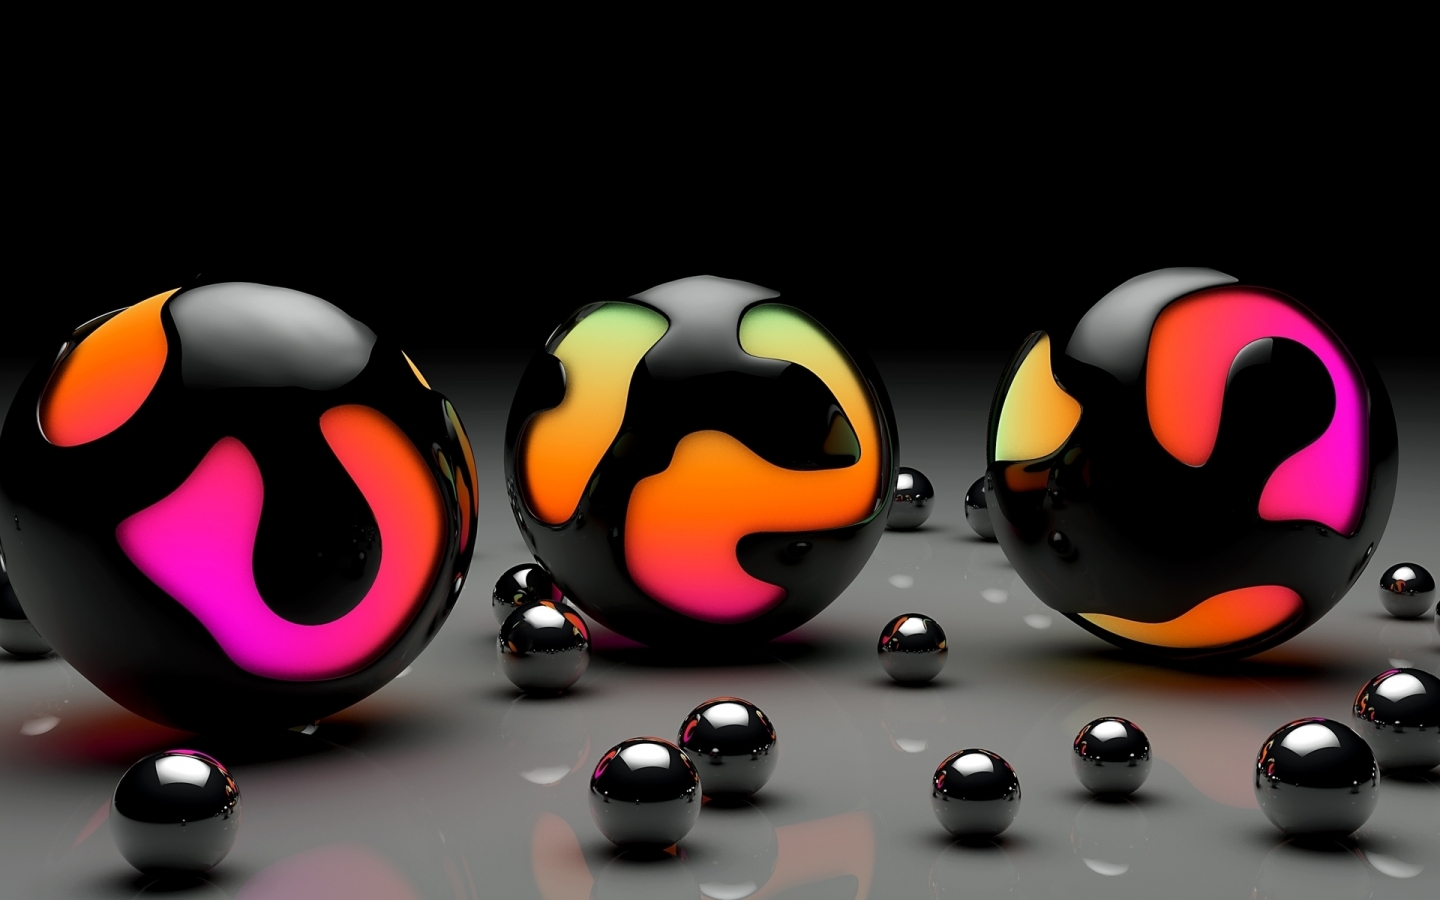 Balls Design for 1440 x 900 widescreen resolution